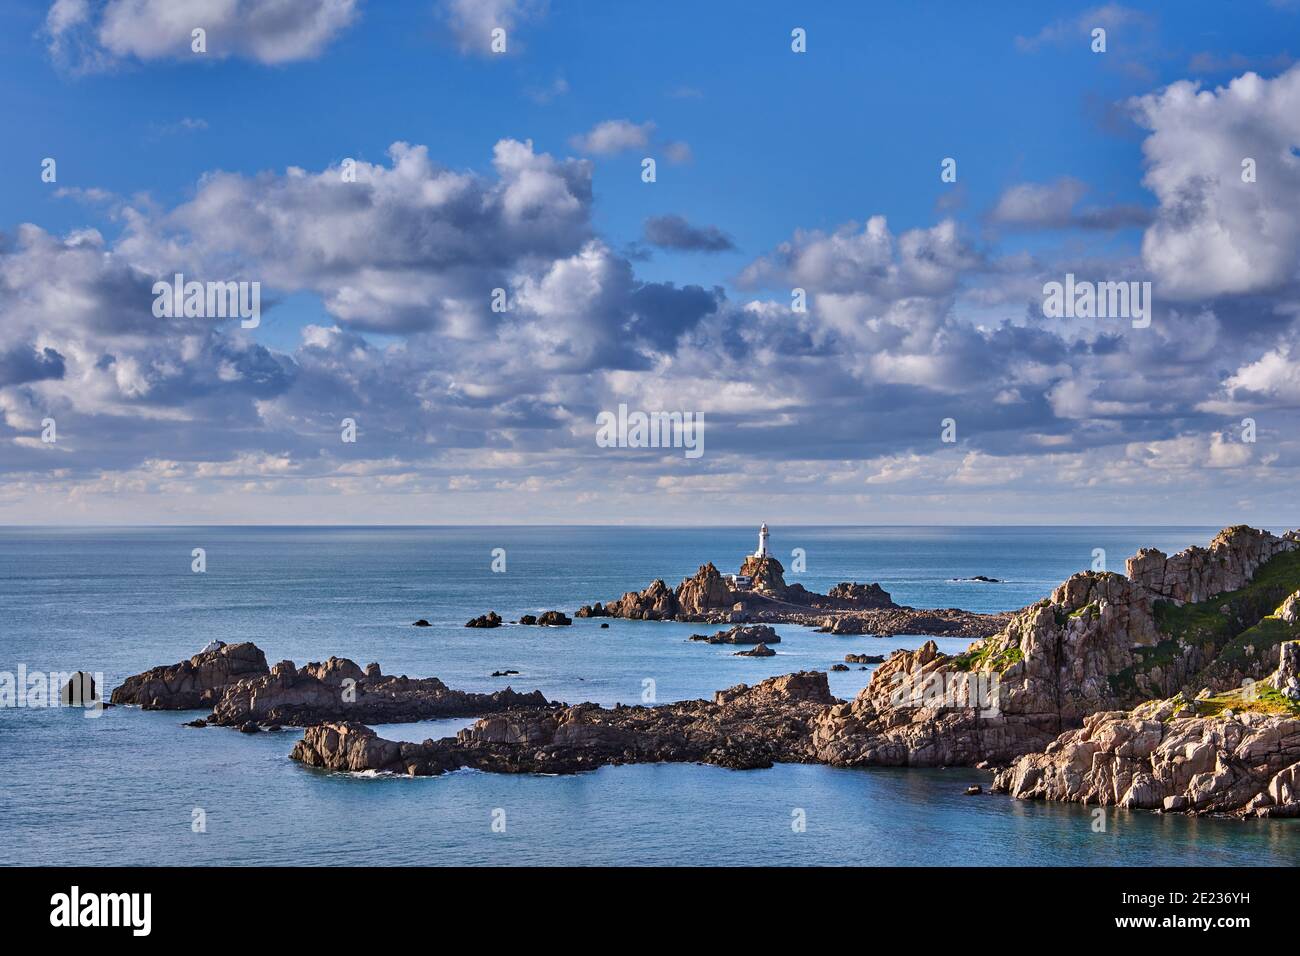 Image de Corbiere avec falaises et mer avec un ciel nuageux. Jersey, îles Anglo-Normandes Banque D'Images